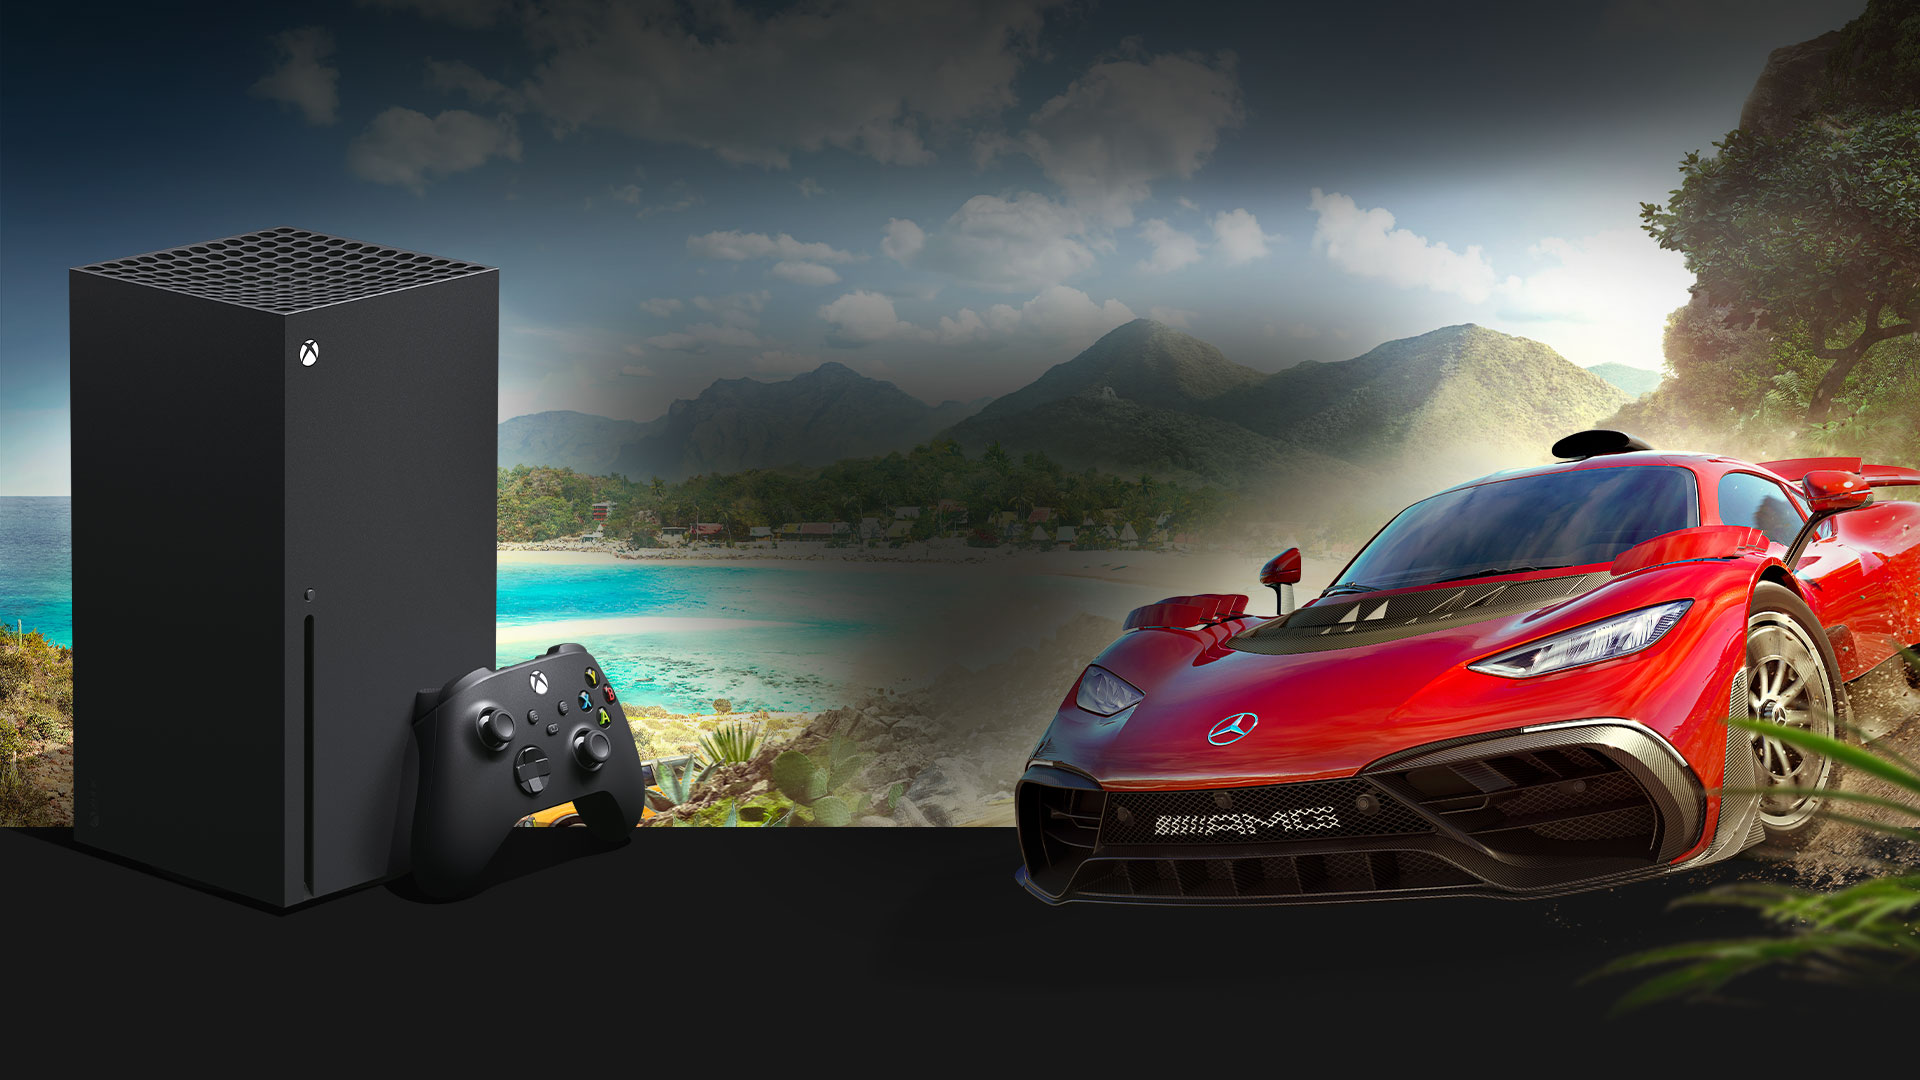 Une Xbox Series X et une Mercedes-AMG One sont installées devant le festival Horizon au Mexique.